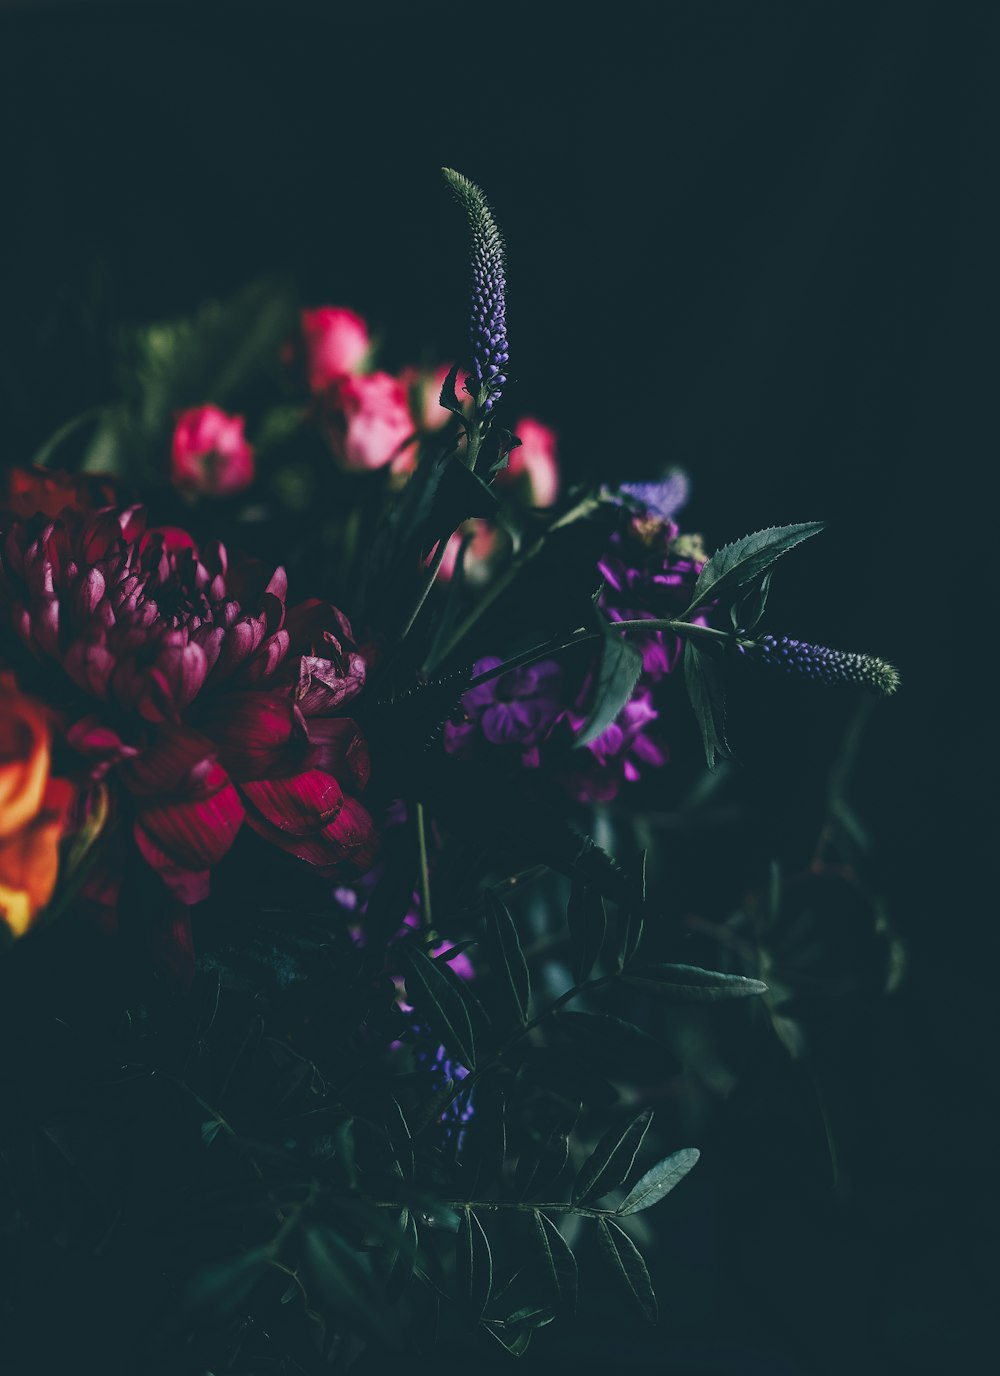 Fotografía de enfoque superficial de flores